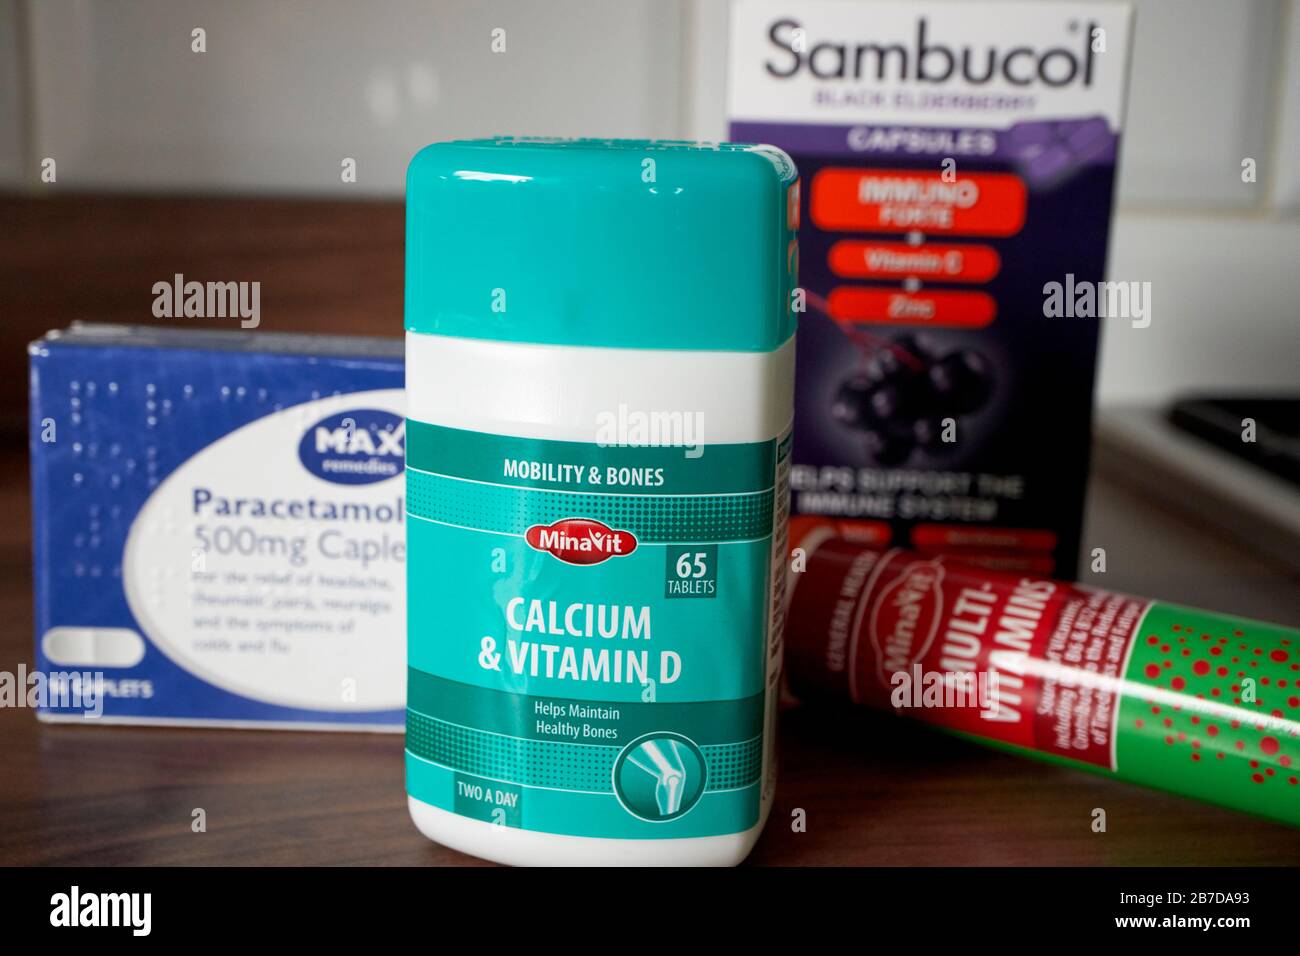 Vitaminpräparate Sambucol Paracetamol und Vitamin d Panic kaufen Vorräte aufgrund von Coronavirus-Ausbruch Stockfoto